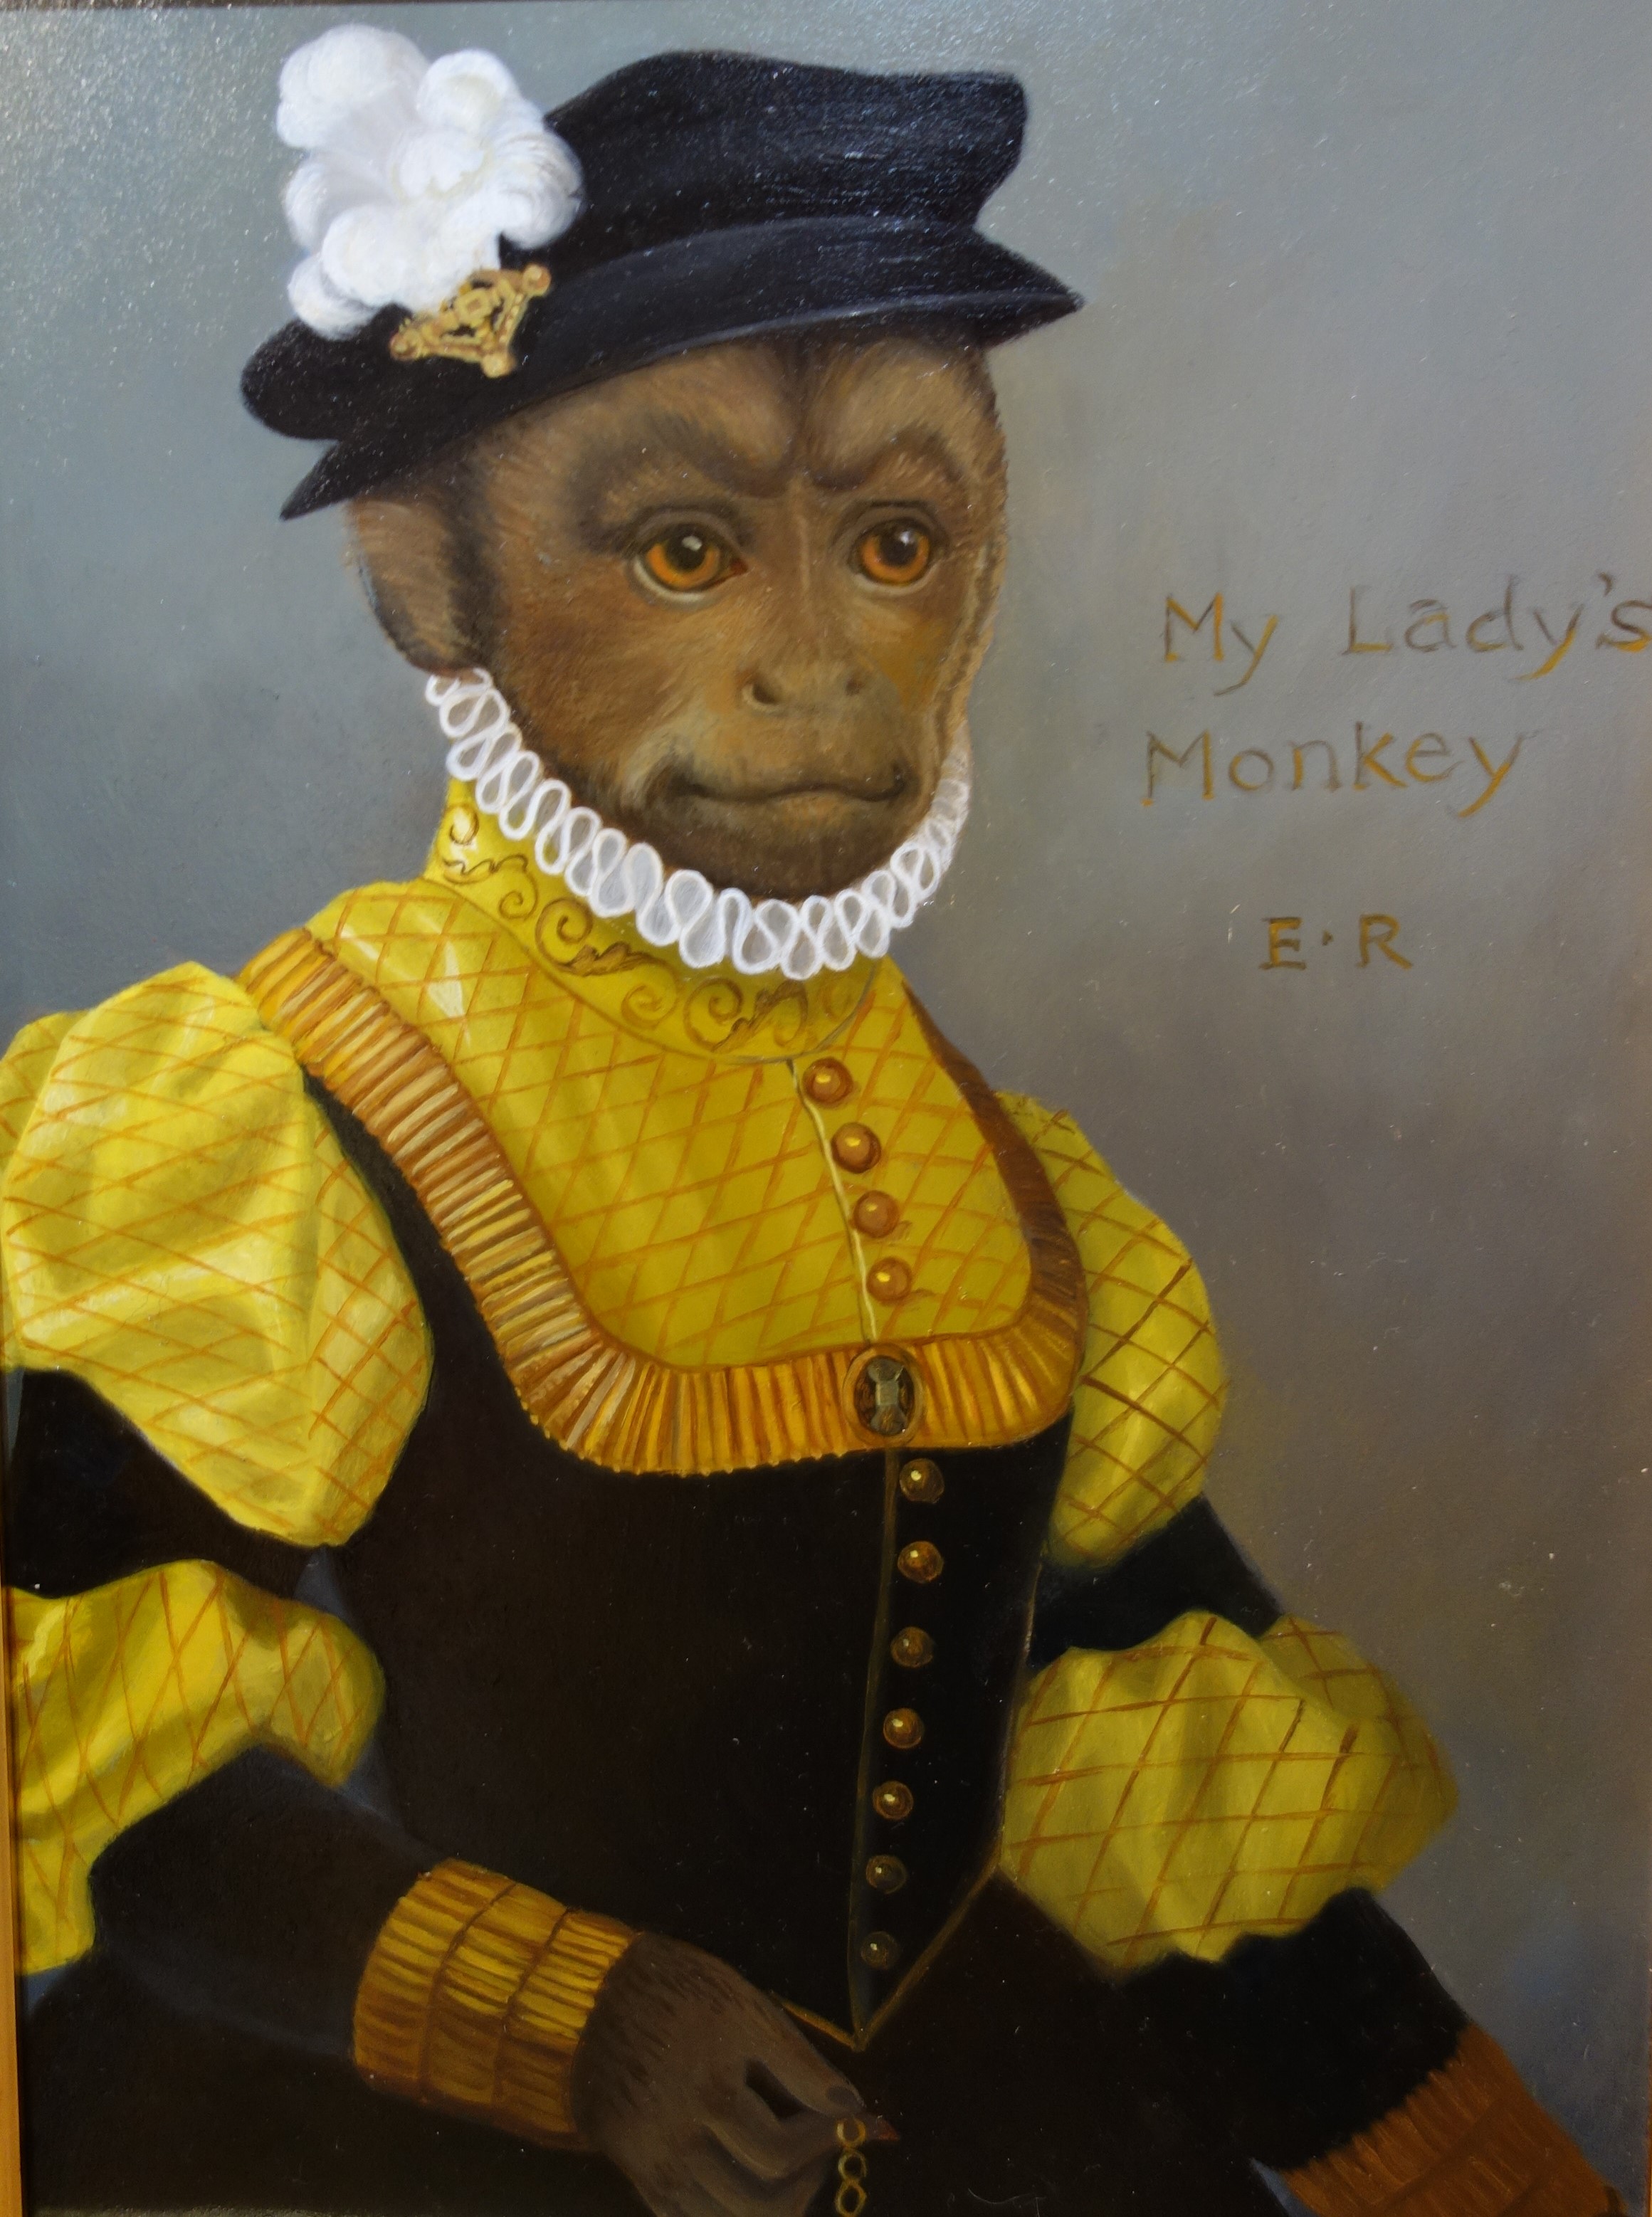 Royal Monkey